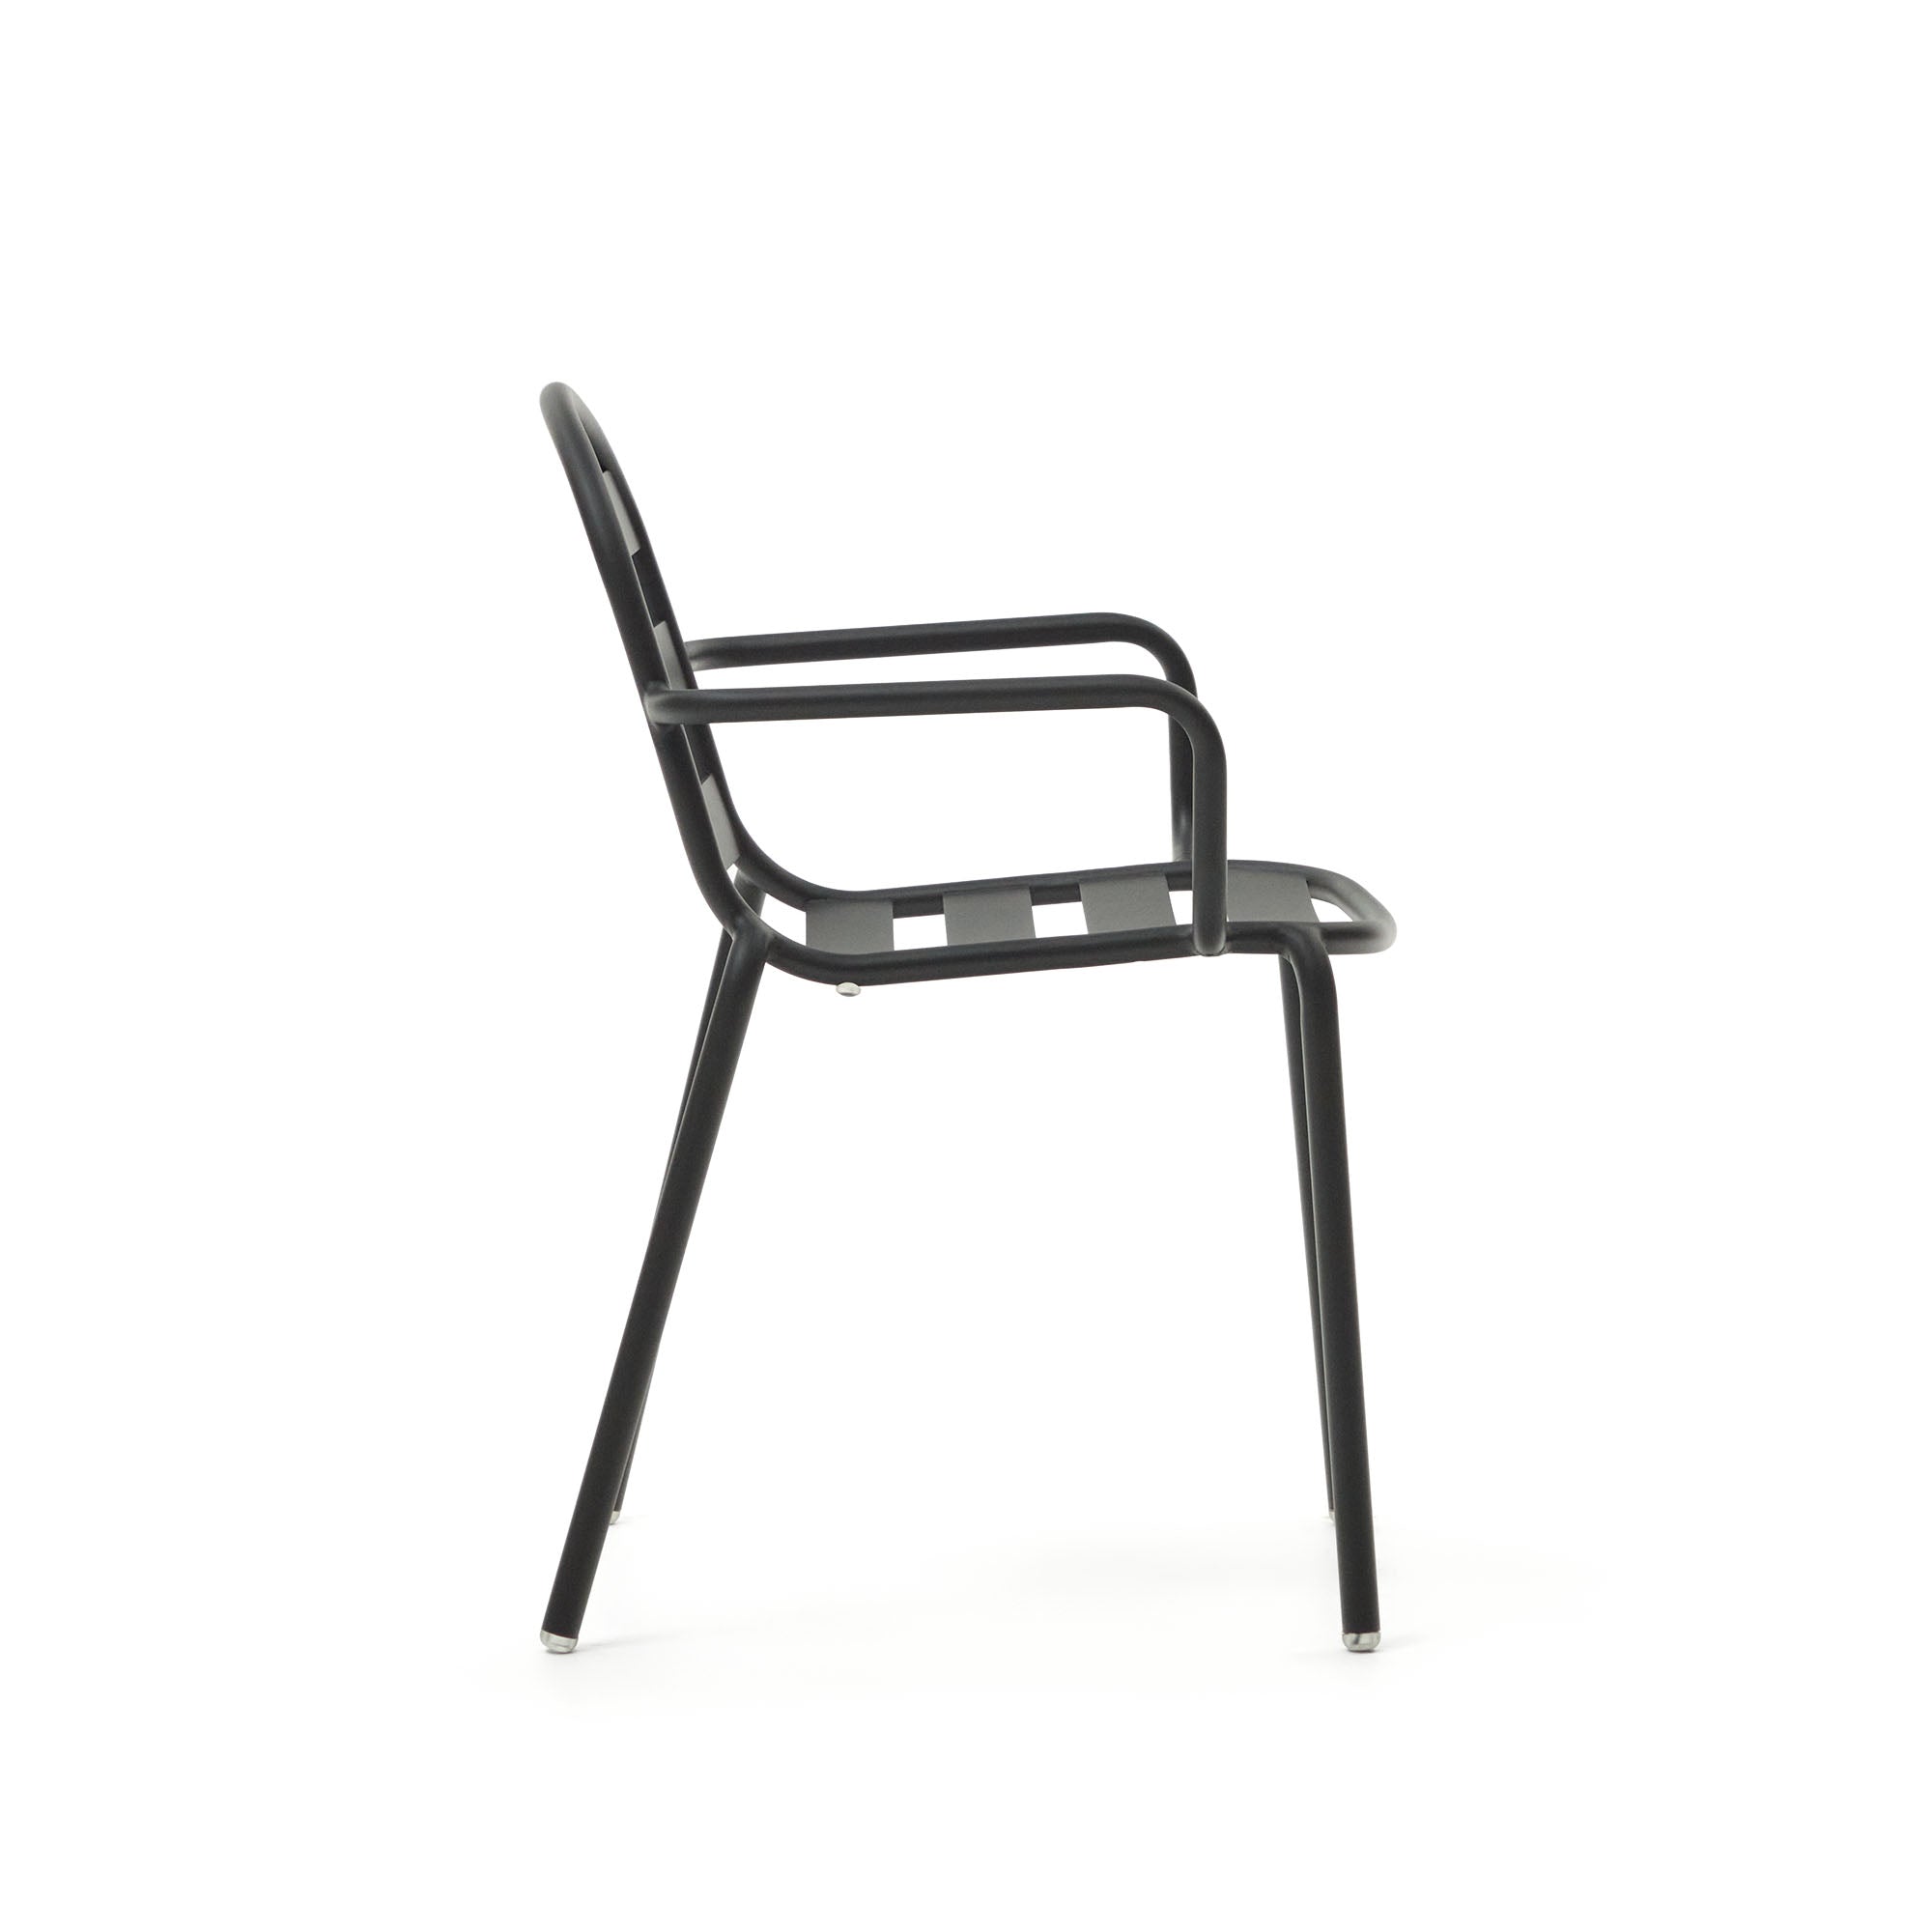 Joncols egymásba rakható kültéri alumínium szék, szürke porszórt bevonattal